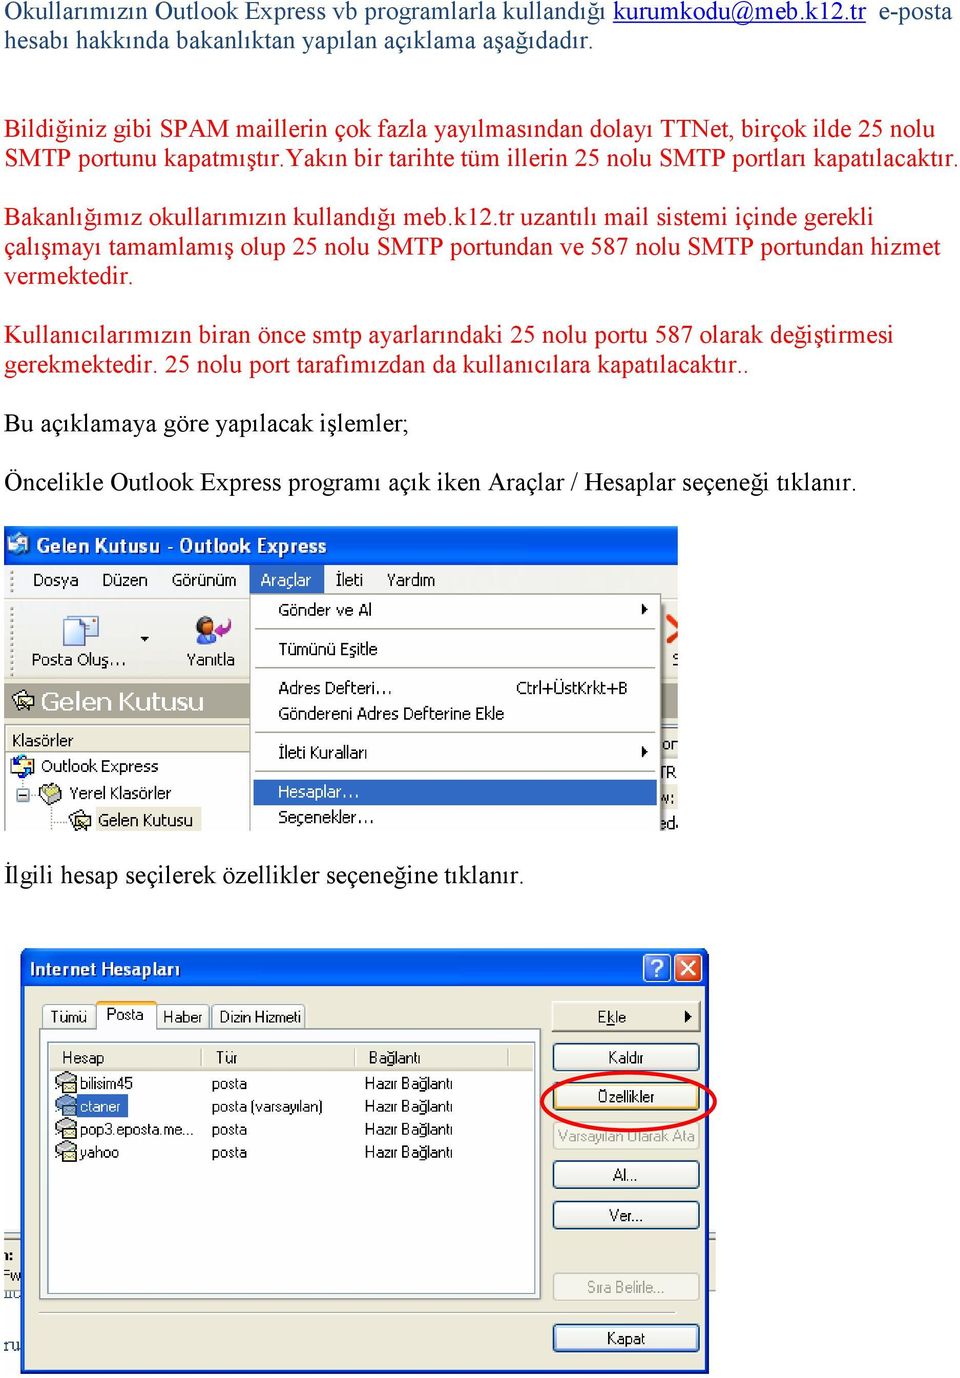 Bakanlığımız okullarımızın kullandığı meb.k12.tr uzantılı mail sistemi içinde gerekli çalışmayı tamamlamış olup 25 nolu SMTP portundan ve 587 nolu SMTP portundan hizmet vermektedir.